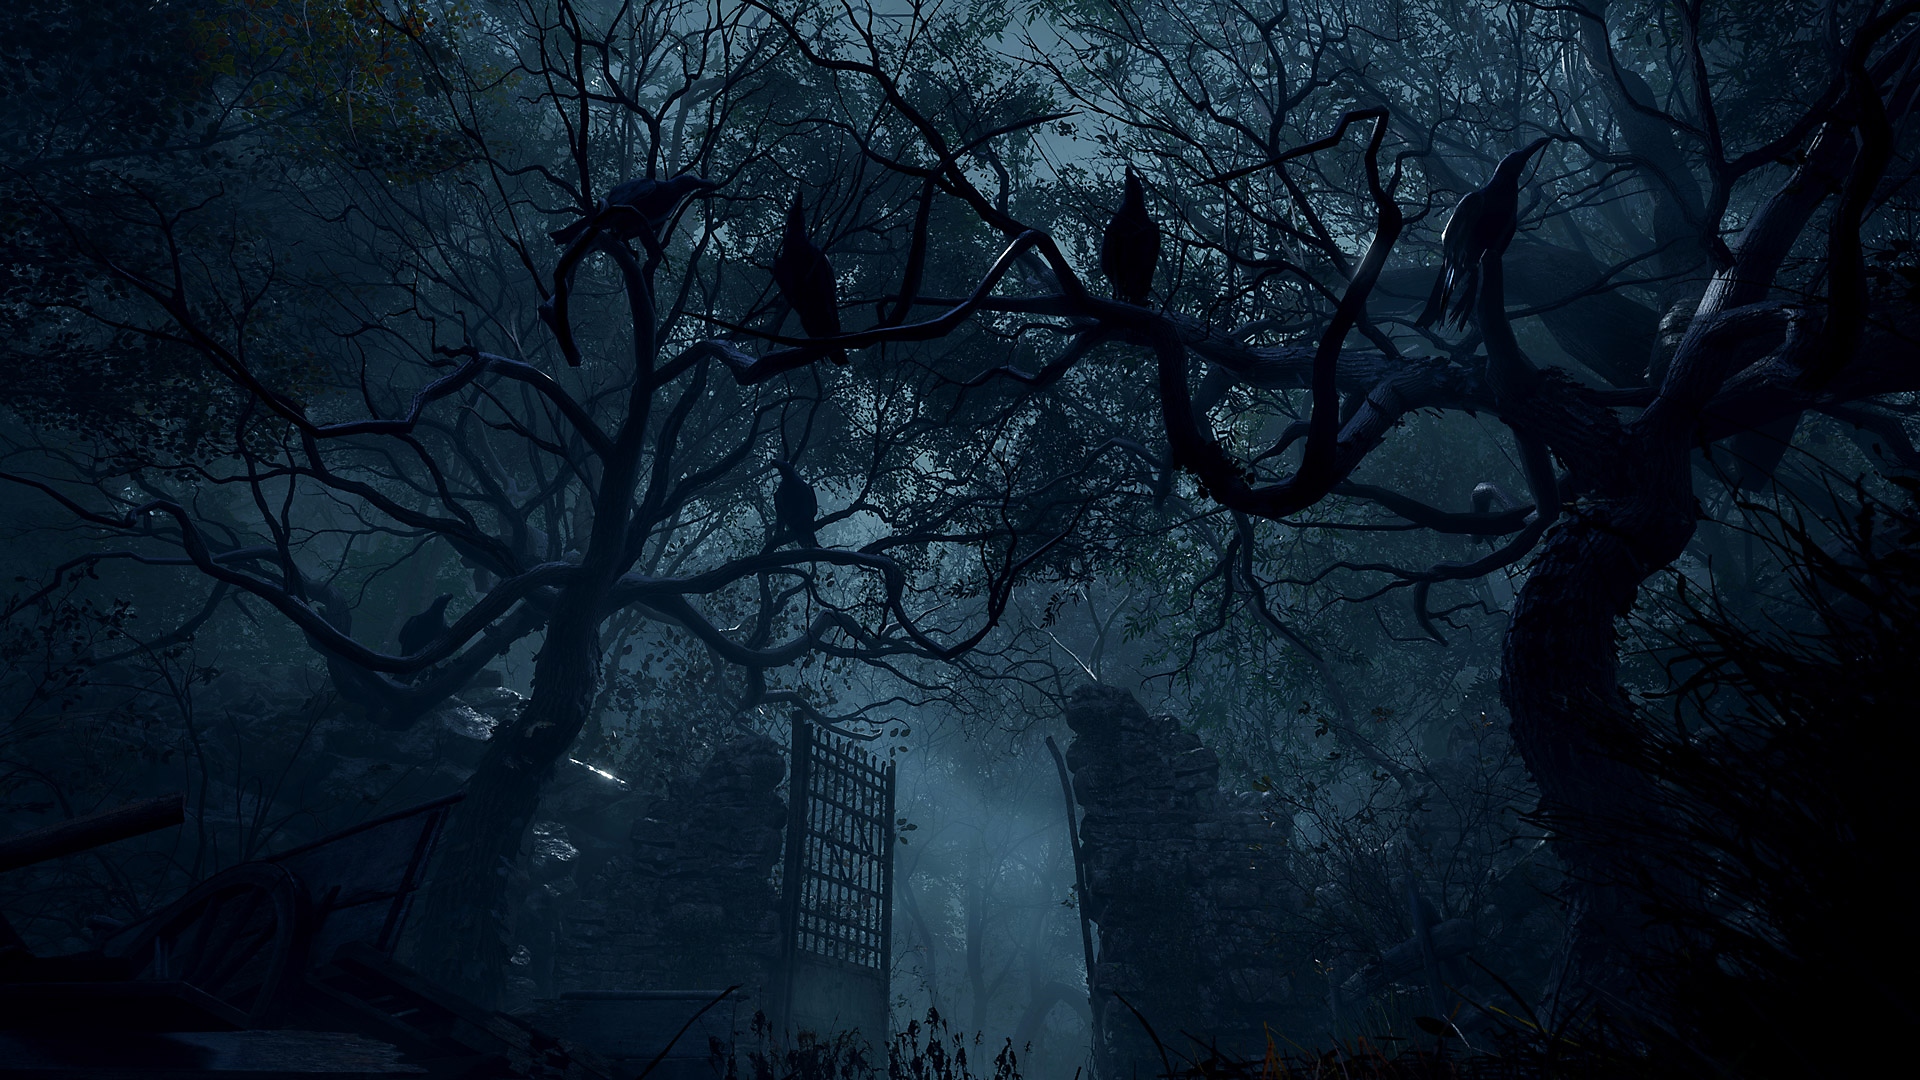 Resident Evil 4-skærmbillede med høje stenporte i et skovområde.